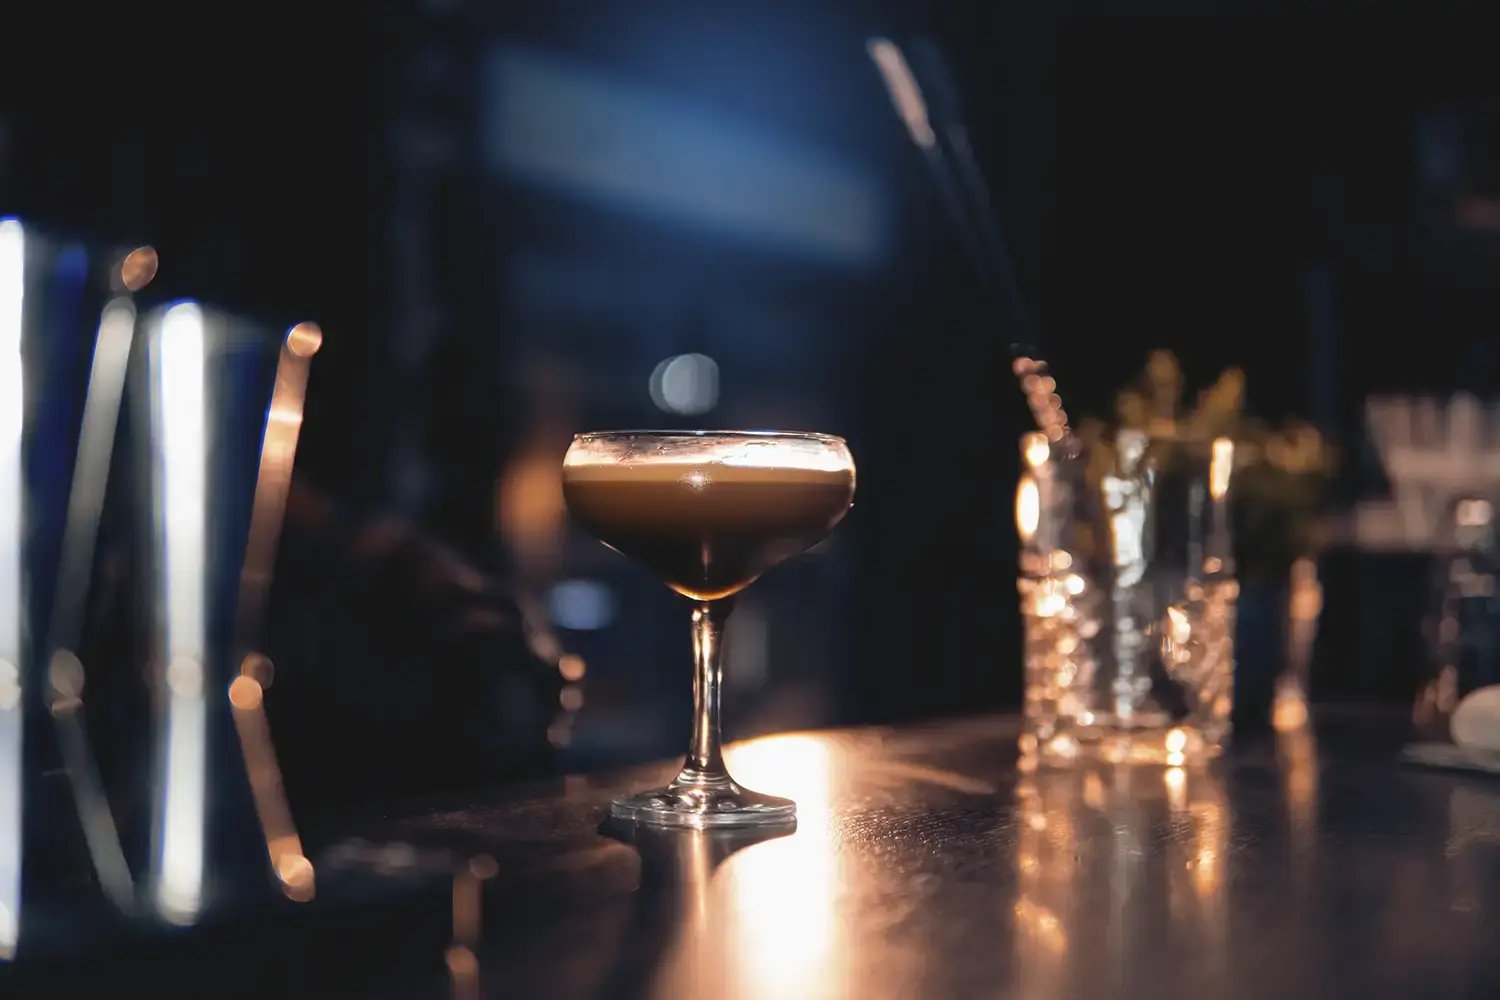 An espresso martini in a glass served on a dark elegant bar